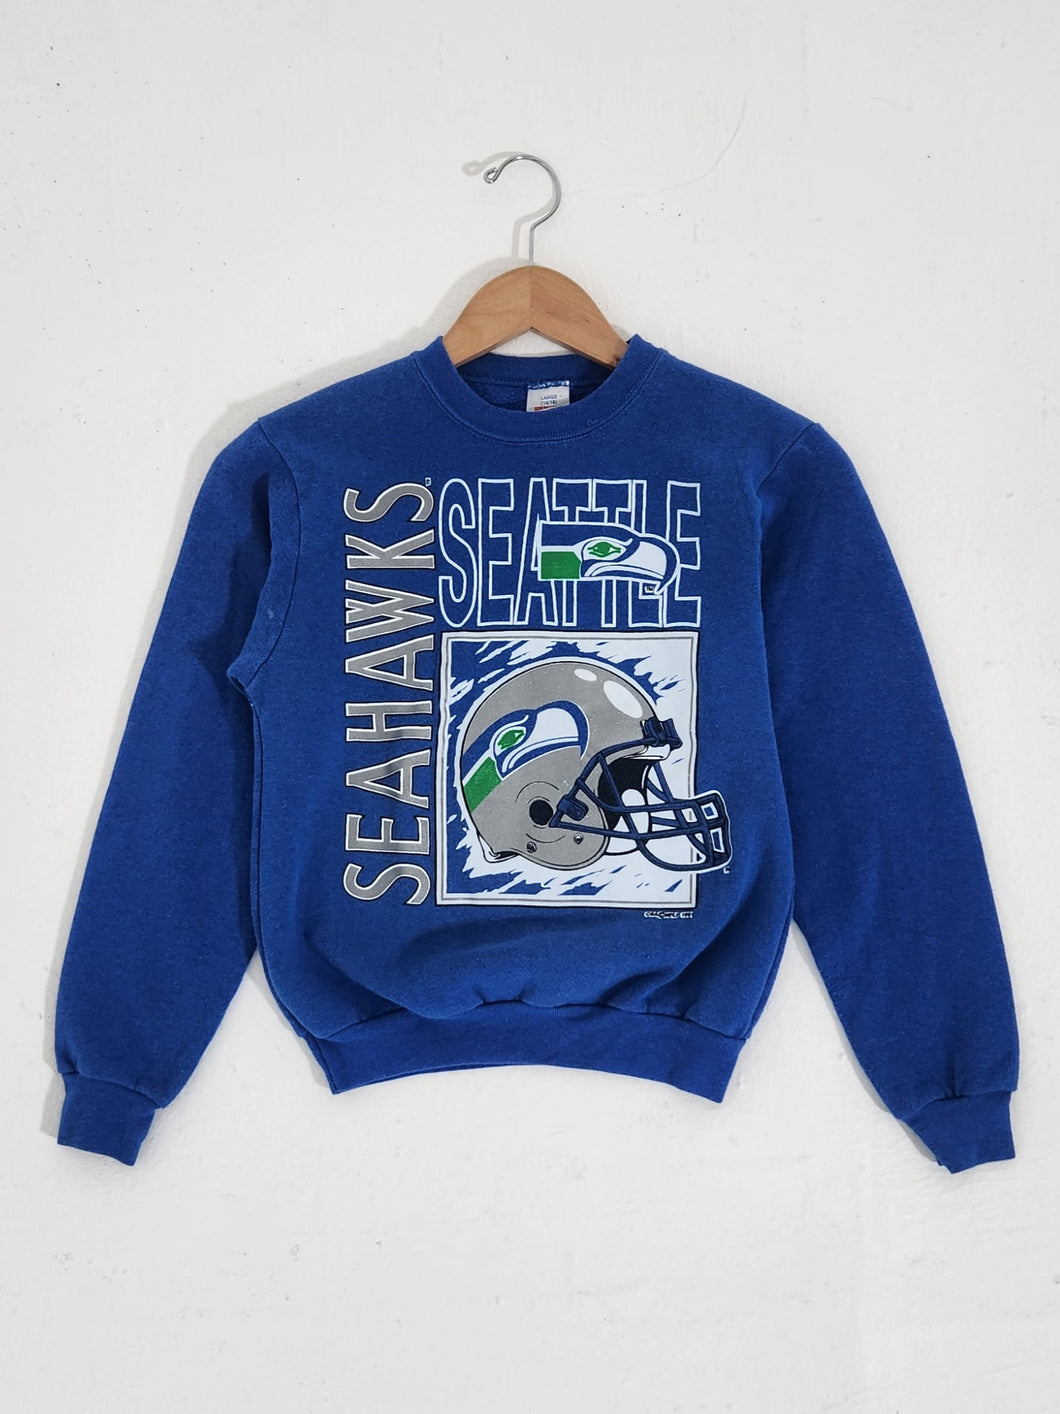 Vintage 1990s Seattle Seahawks Helmet Crewneck Sz. Youth Large